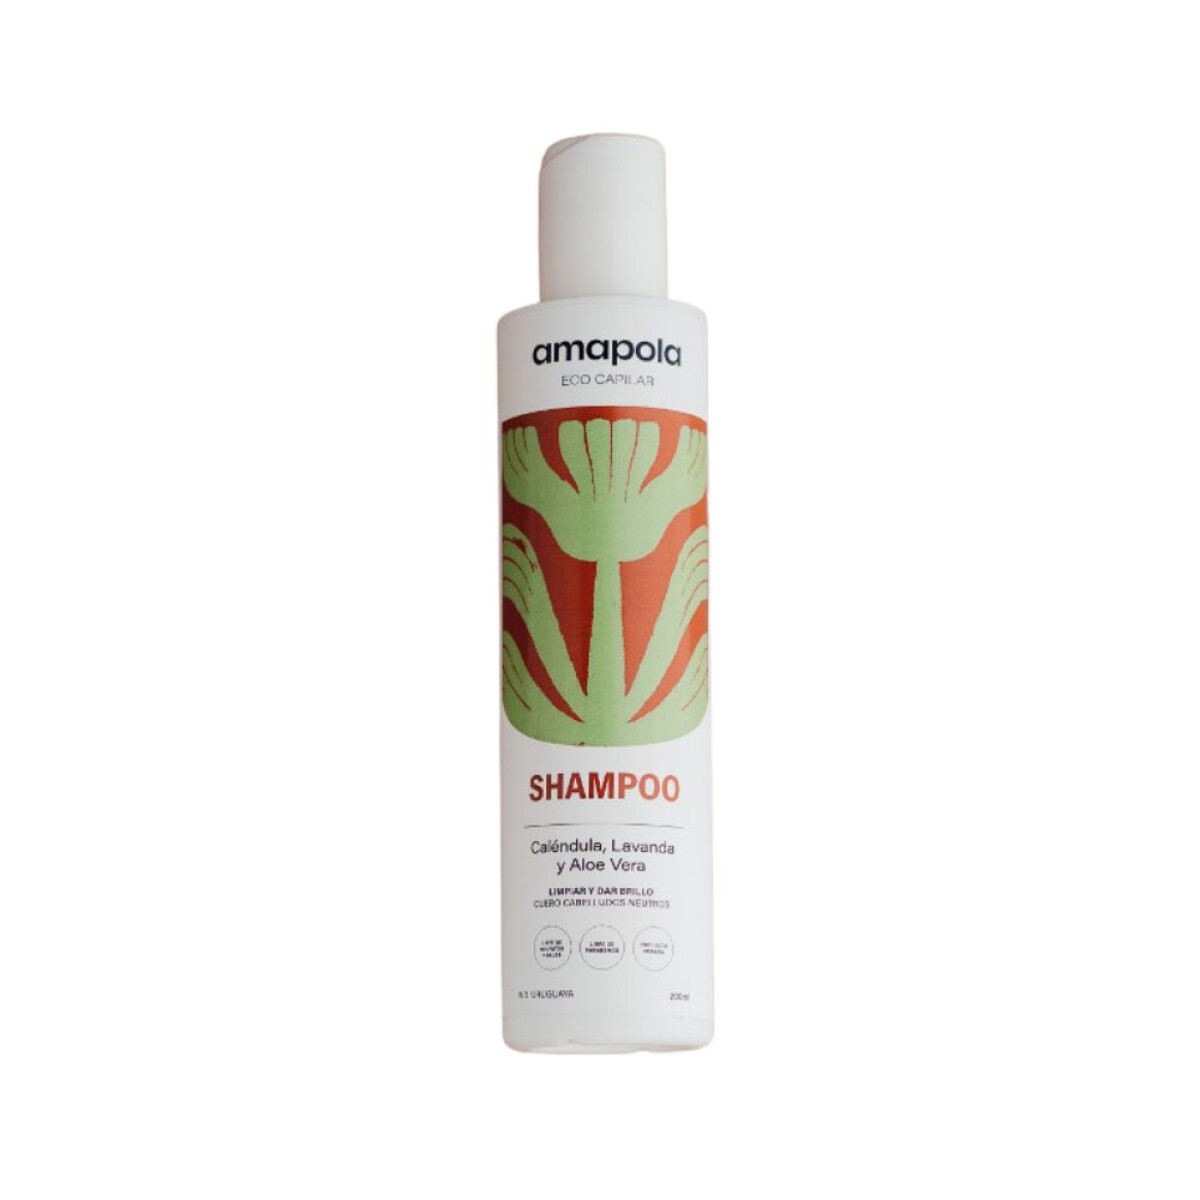 Shampoo Caléndula, lavanda y Aloe Vera - Amapola 